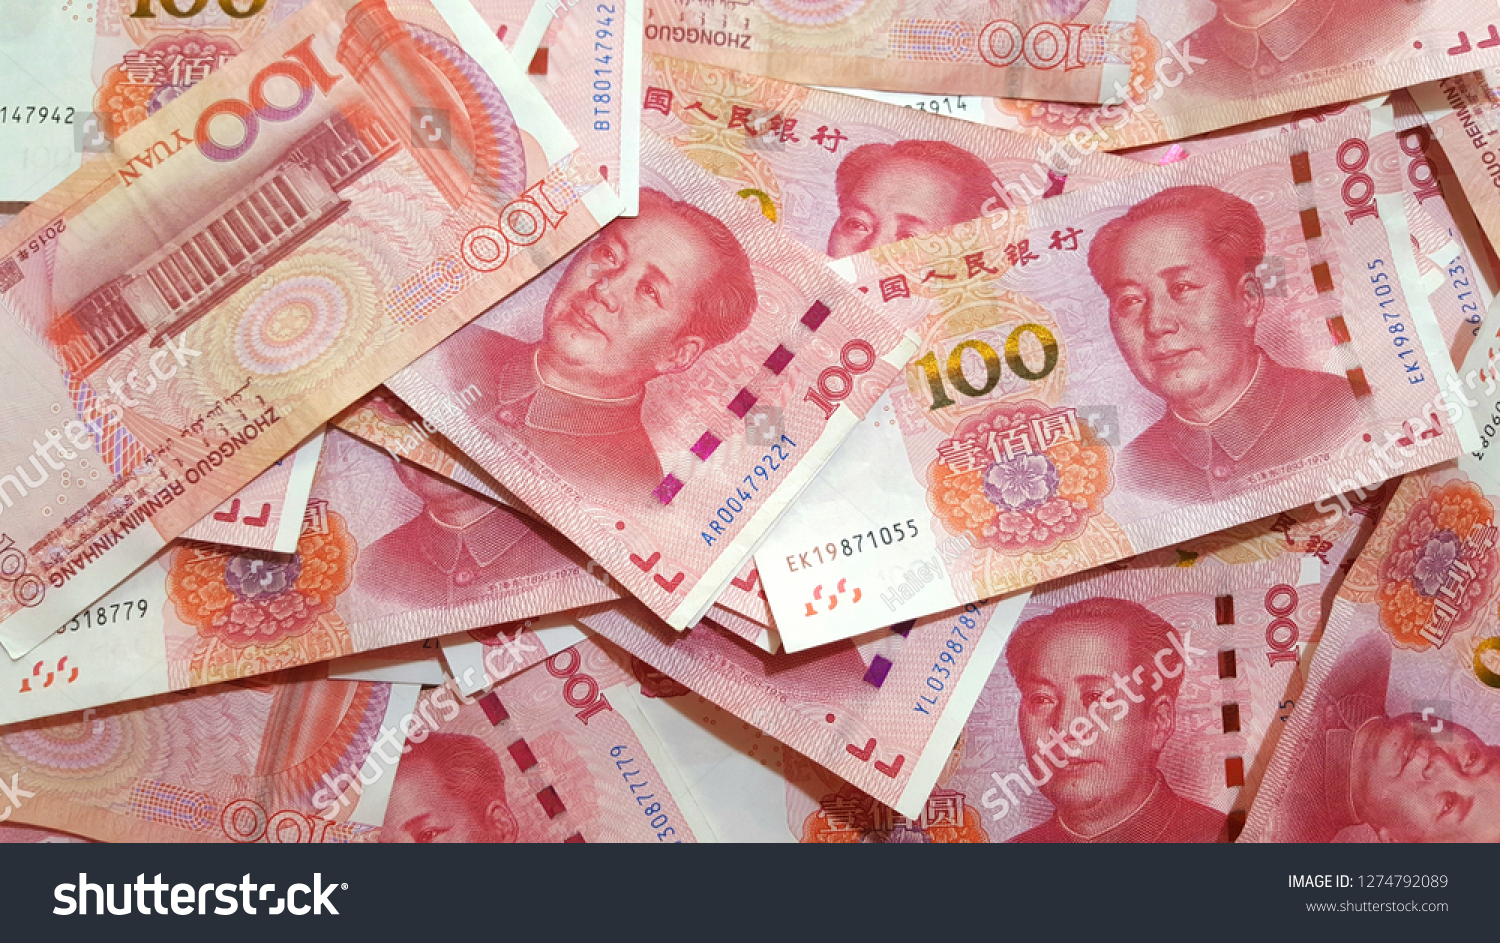 Юань иностранной валюты. Юань. Деньги Китая. Китайский юань. Юань купюры.